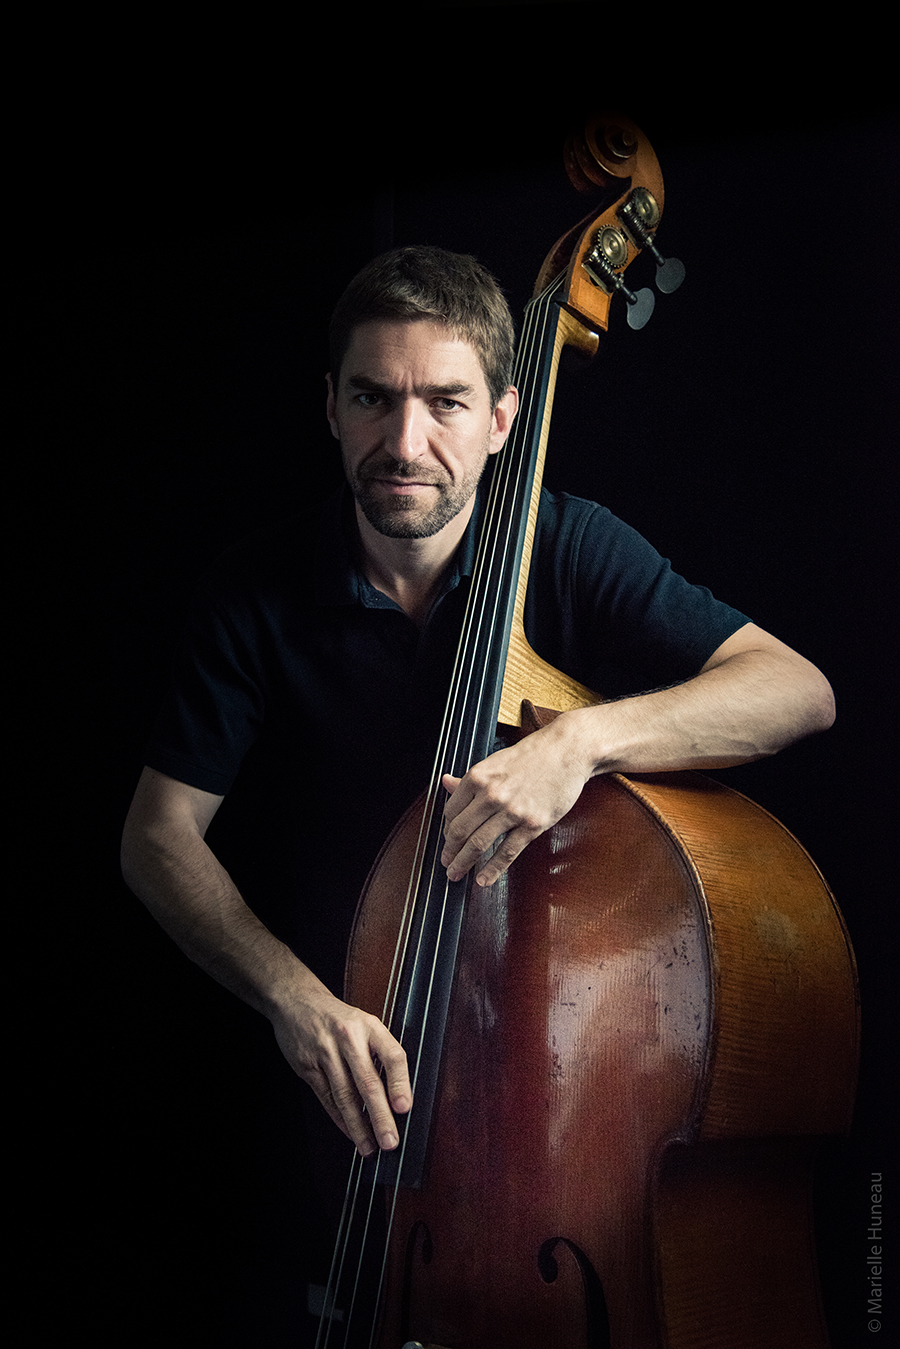     Damien Groleau - Photo credit Sylvain Dubrez, double bass player